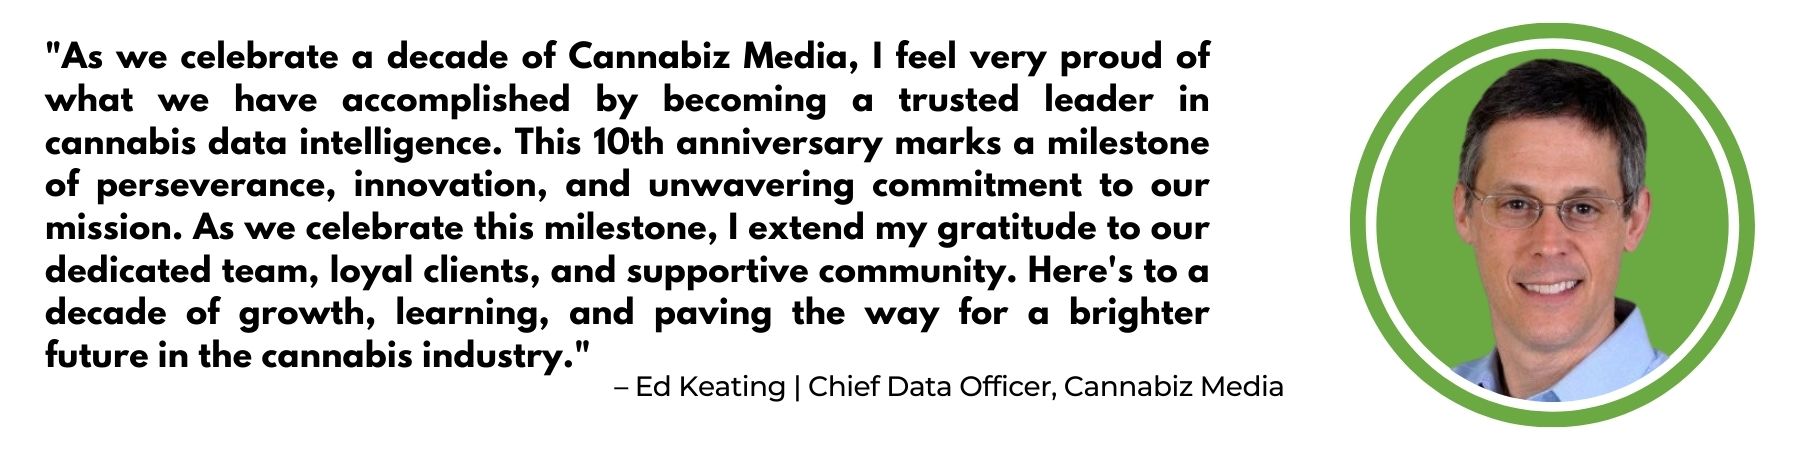 Celebrando una década de Cannabiz Media: un viaje de crecimiento, innovación y liderazgo industrial | Medios Cannábicos